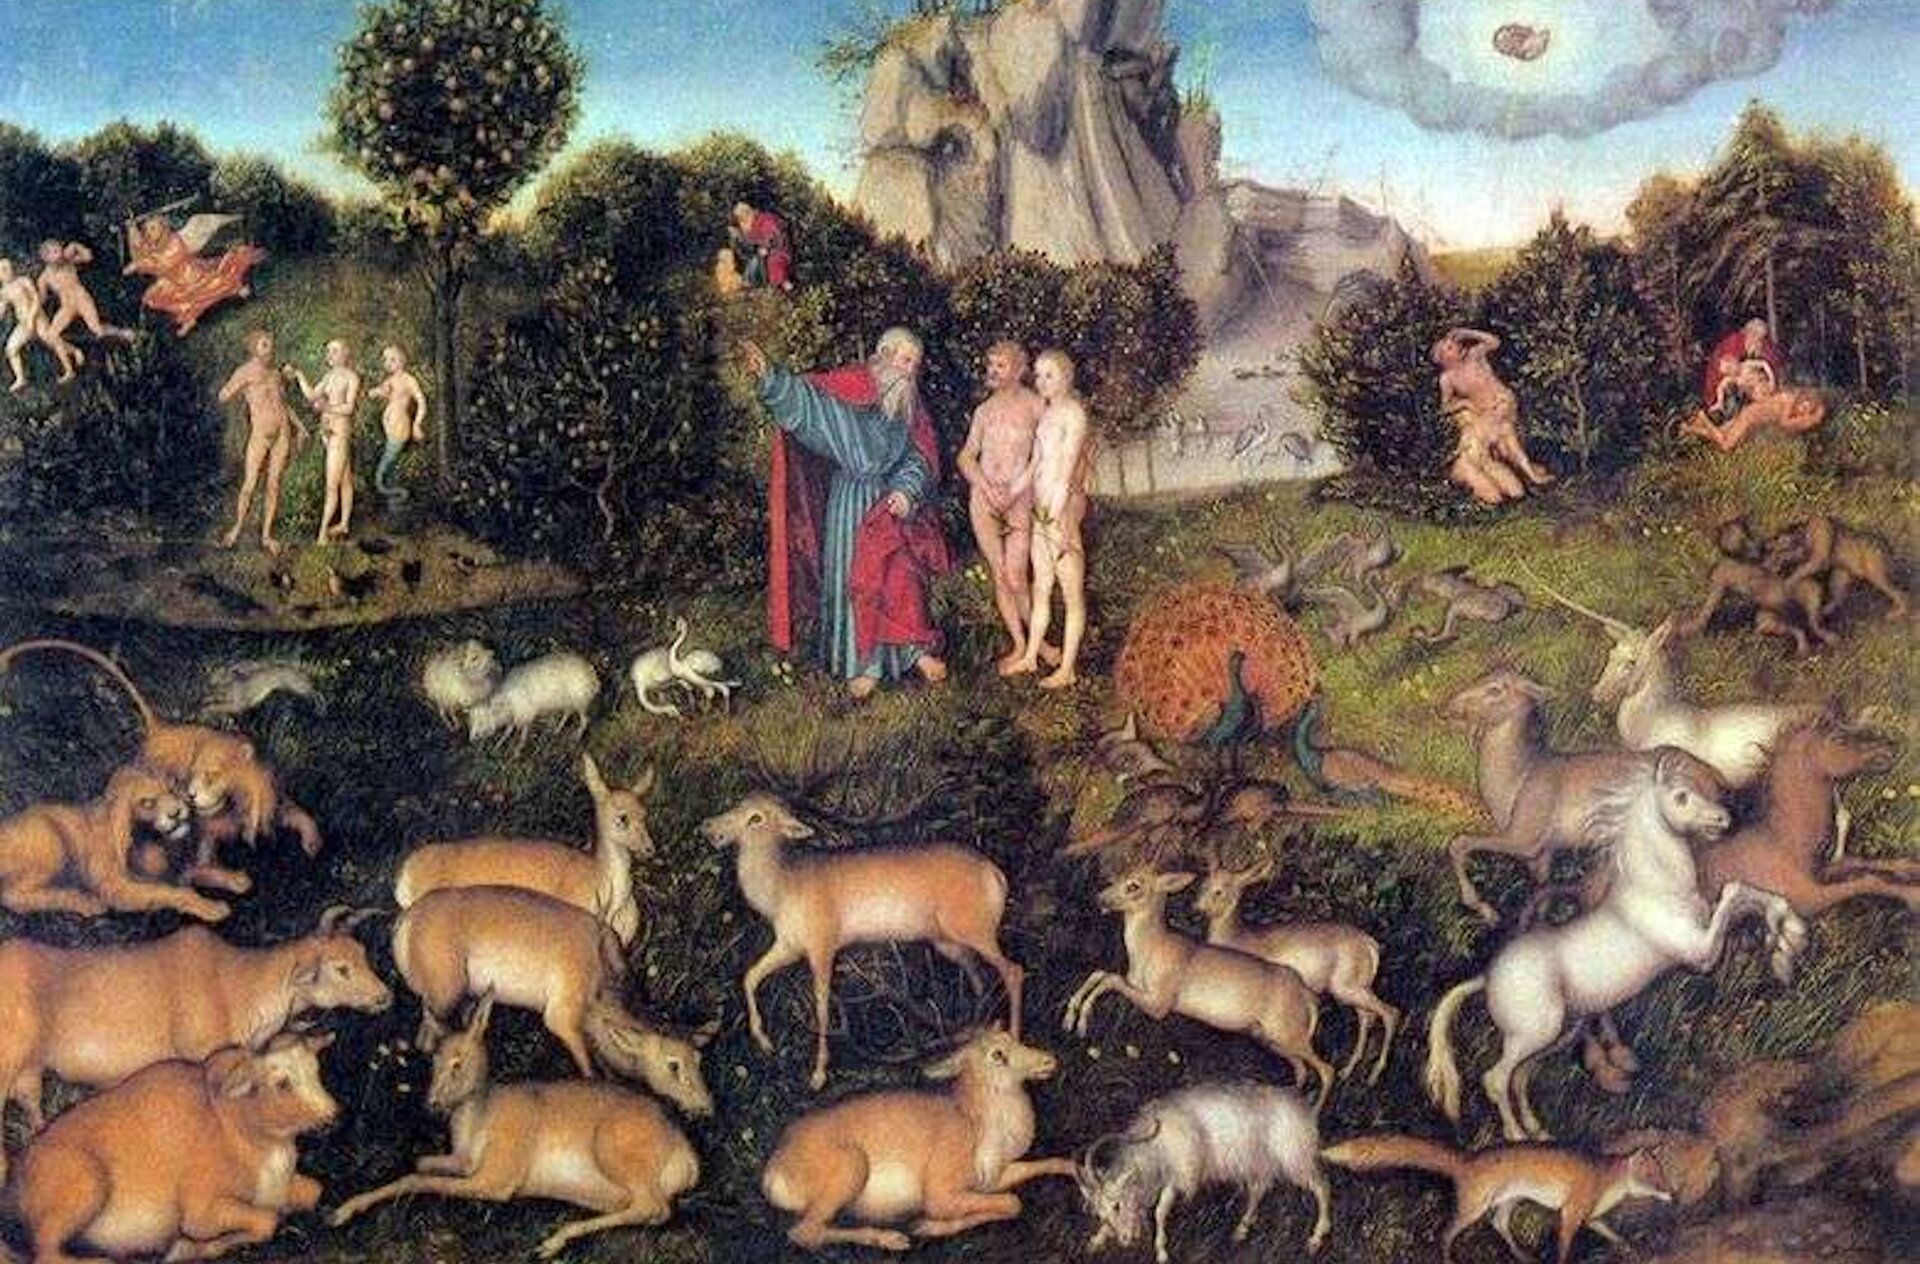 Ilustracja przedstawia ogród pełen różnorodnych zwierząt. W środkowej części stoi naga para kobiety i mężczyzny oraz ubrany w togę starzec.